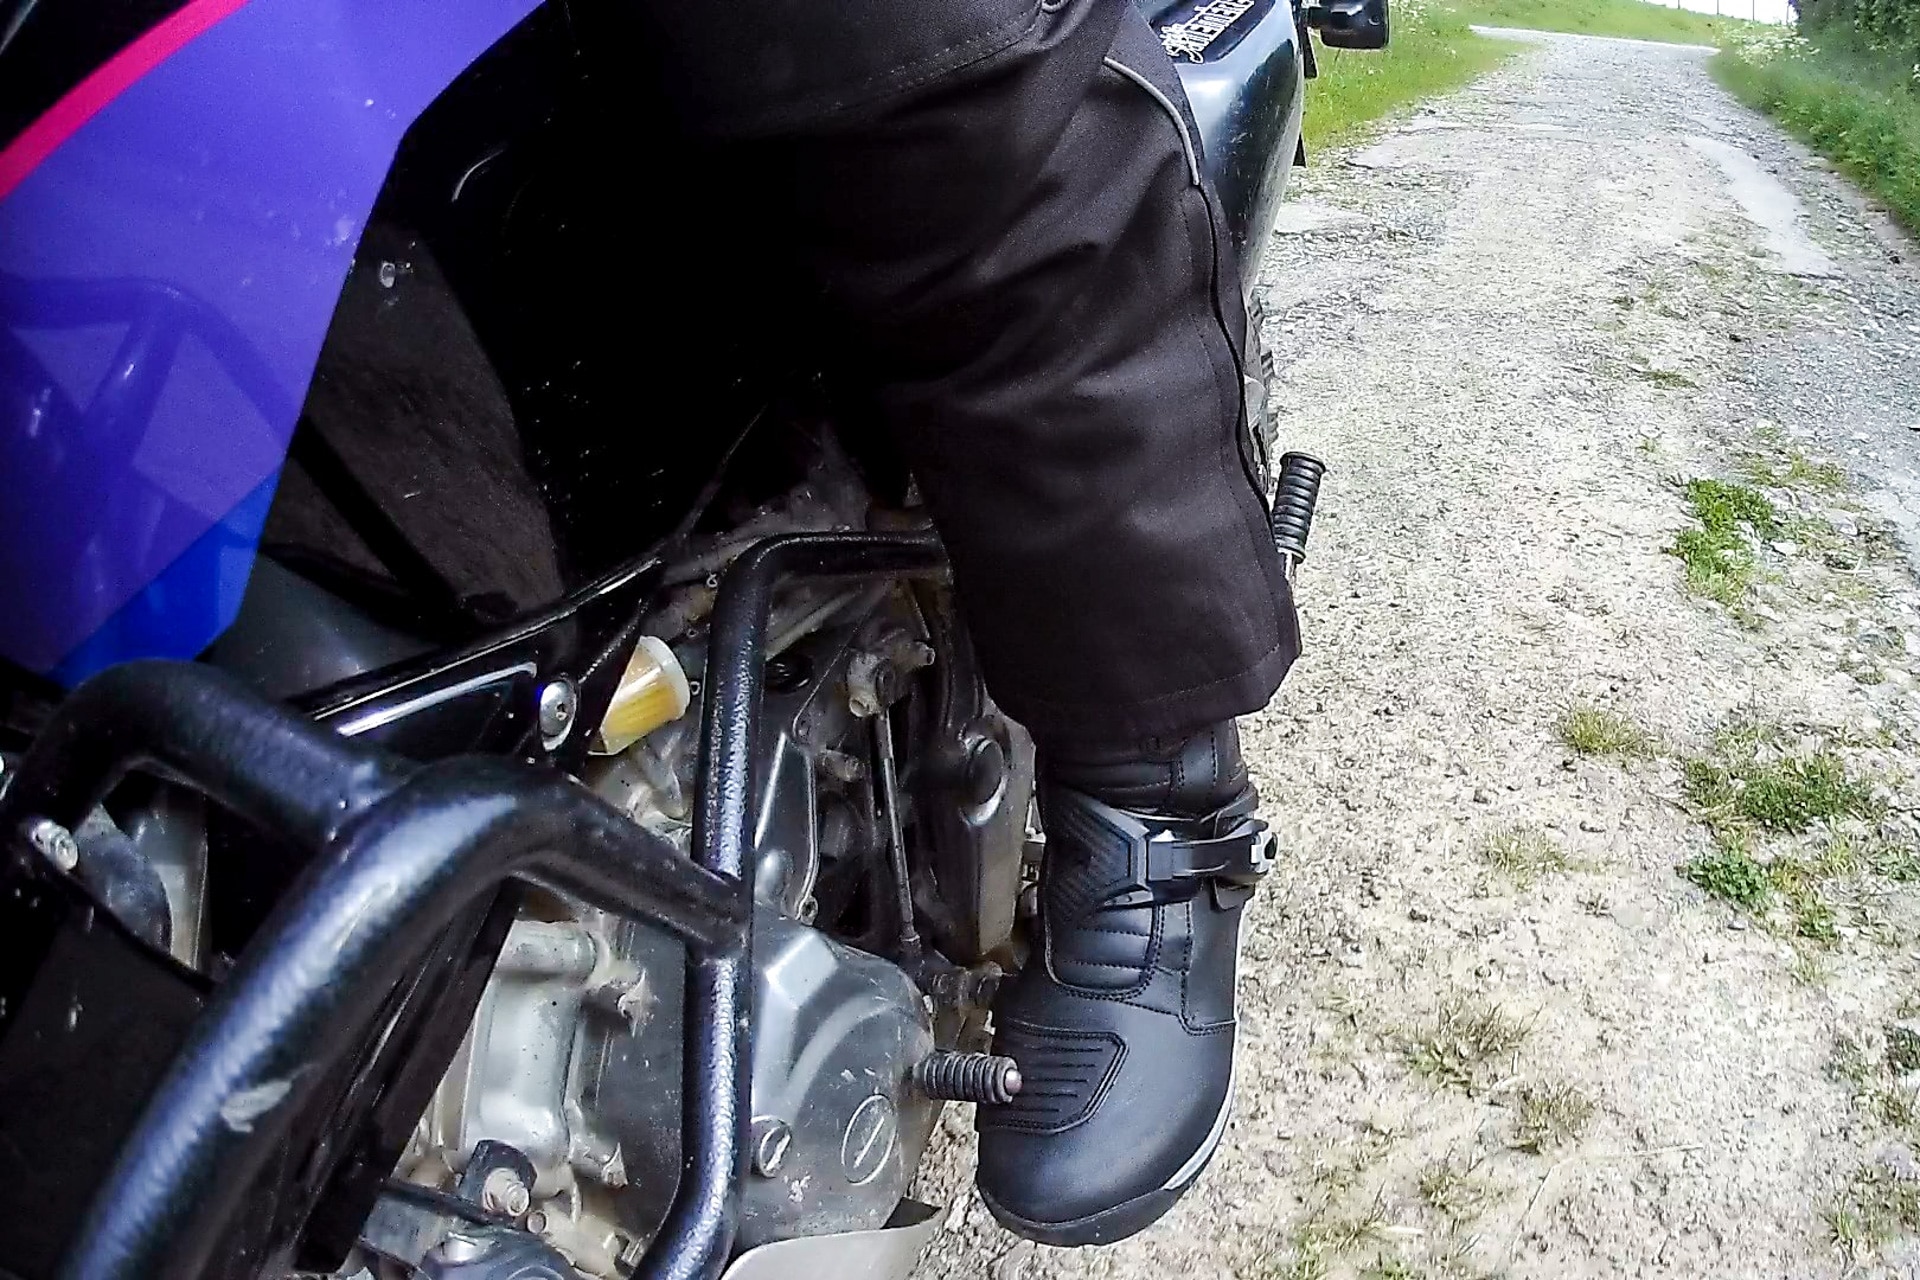 lit de pied remplaçable Bottes de moto Adulte Bottes de randonnée robustes et imperméables Bottes Sierra Pro O'NEAL Enduro Adventure semelle intérieure renforcée en métal 